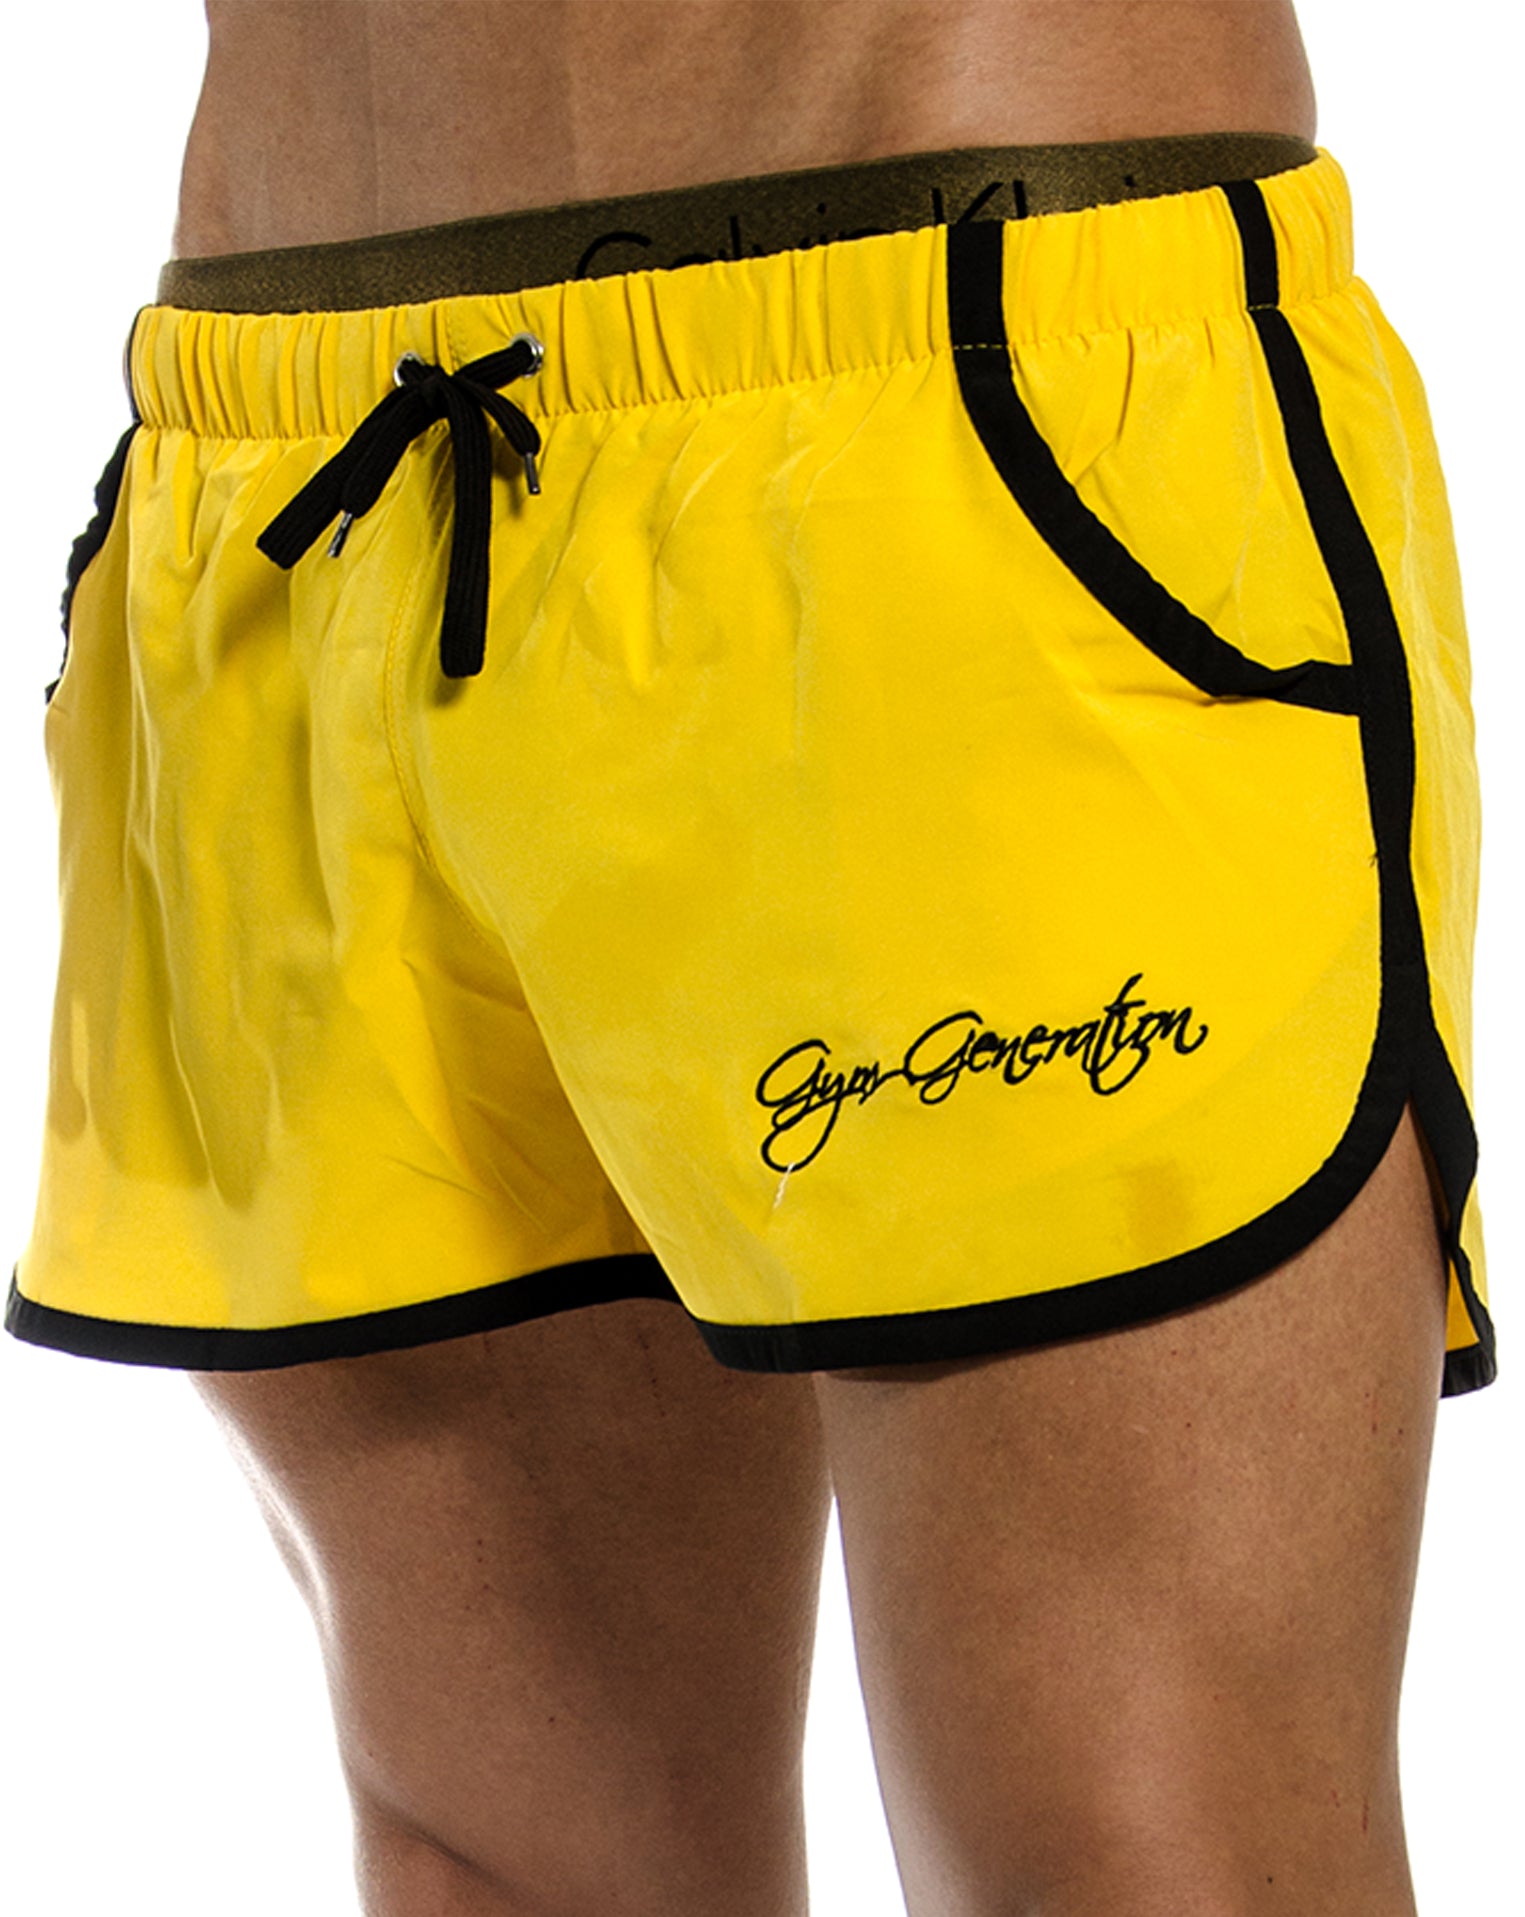 Gym Generation gelbe Zyzz Shorts mit integriertem Netzgewebe und optimaler Beinfreiheit für maximale Bewegungsfreiheit.